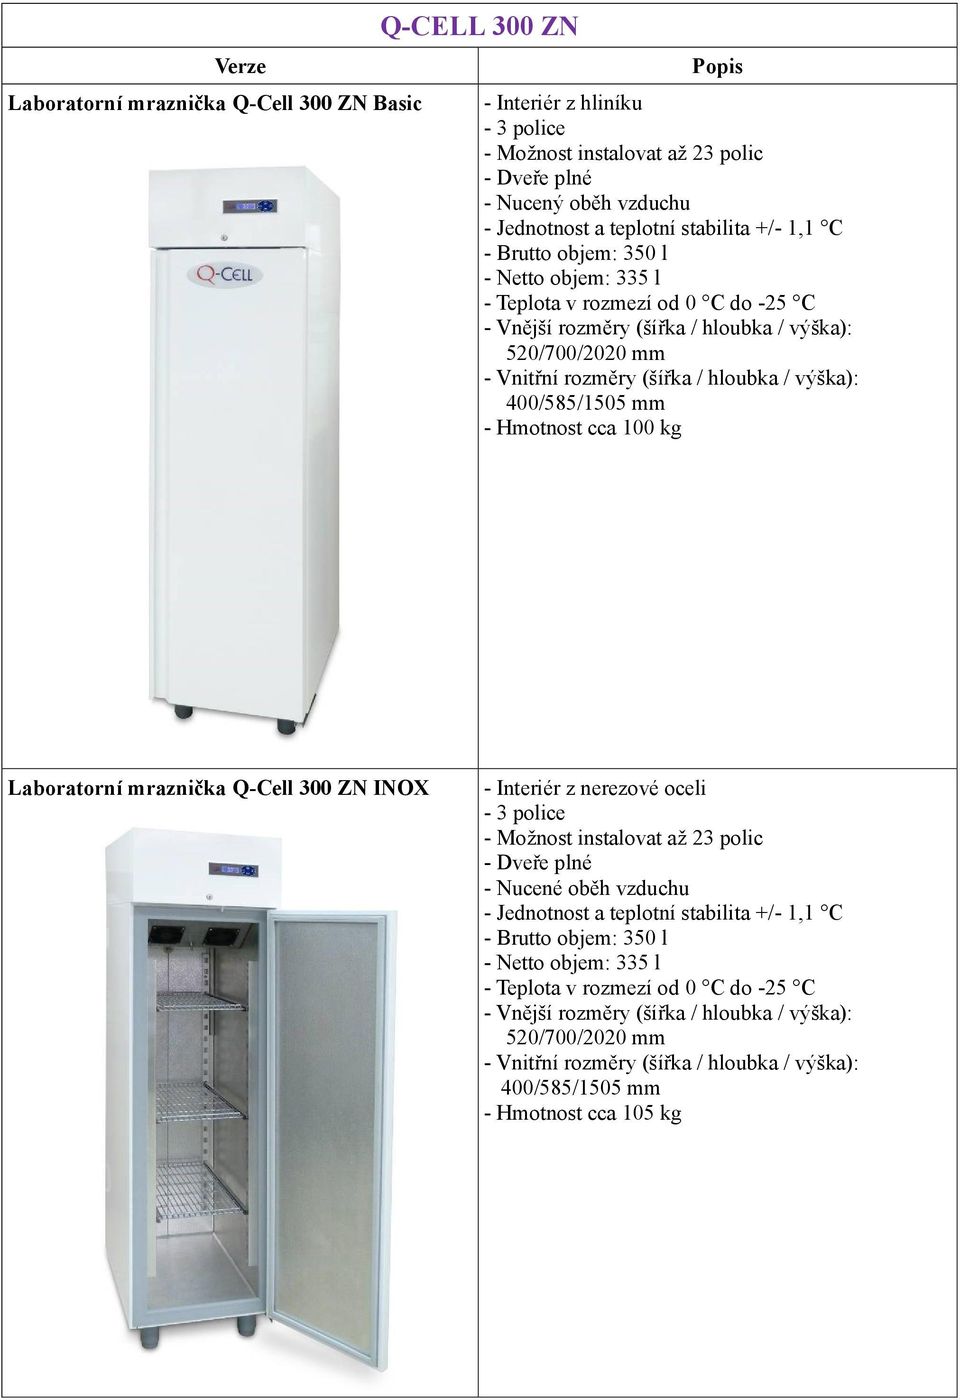 Laboratorní mraznička Q-Cell 300 ZN INOX - Nucené oběh vzduchu - Brutto